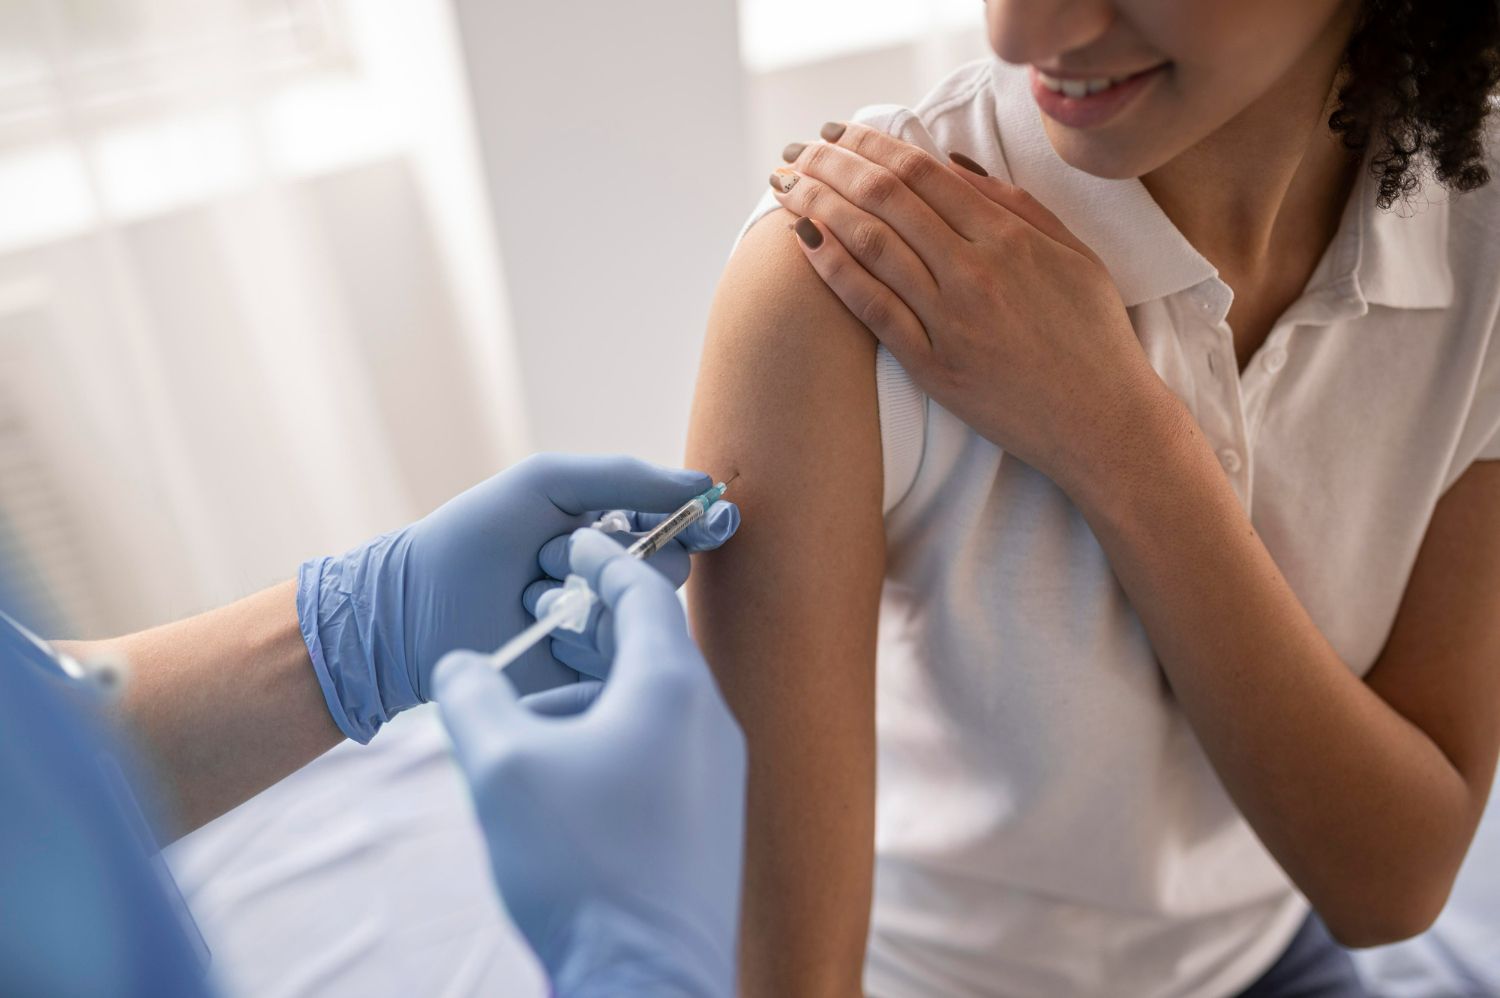 Vacina contra diabetes é testada com sucesso? Fique por dentro dos fatos